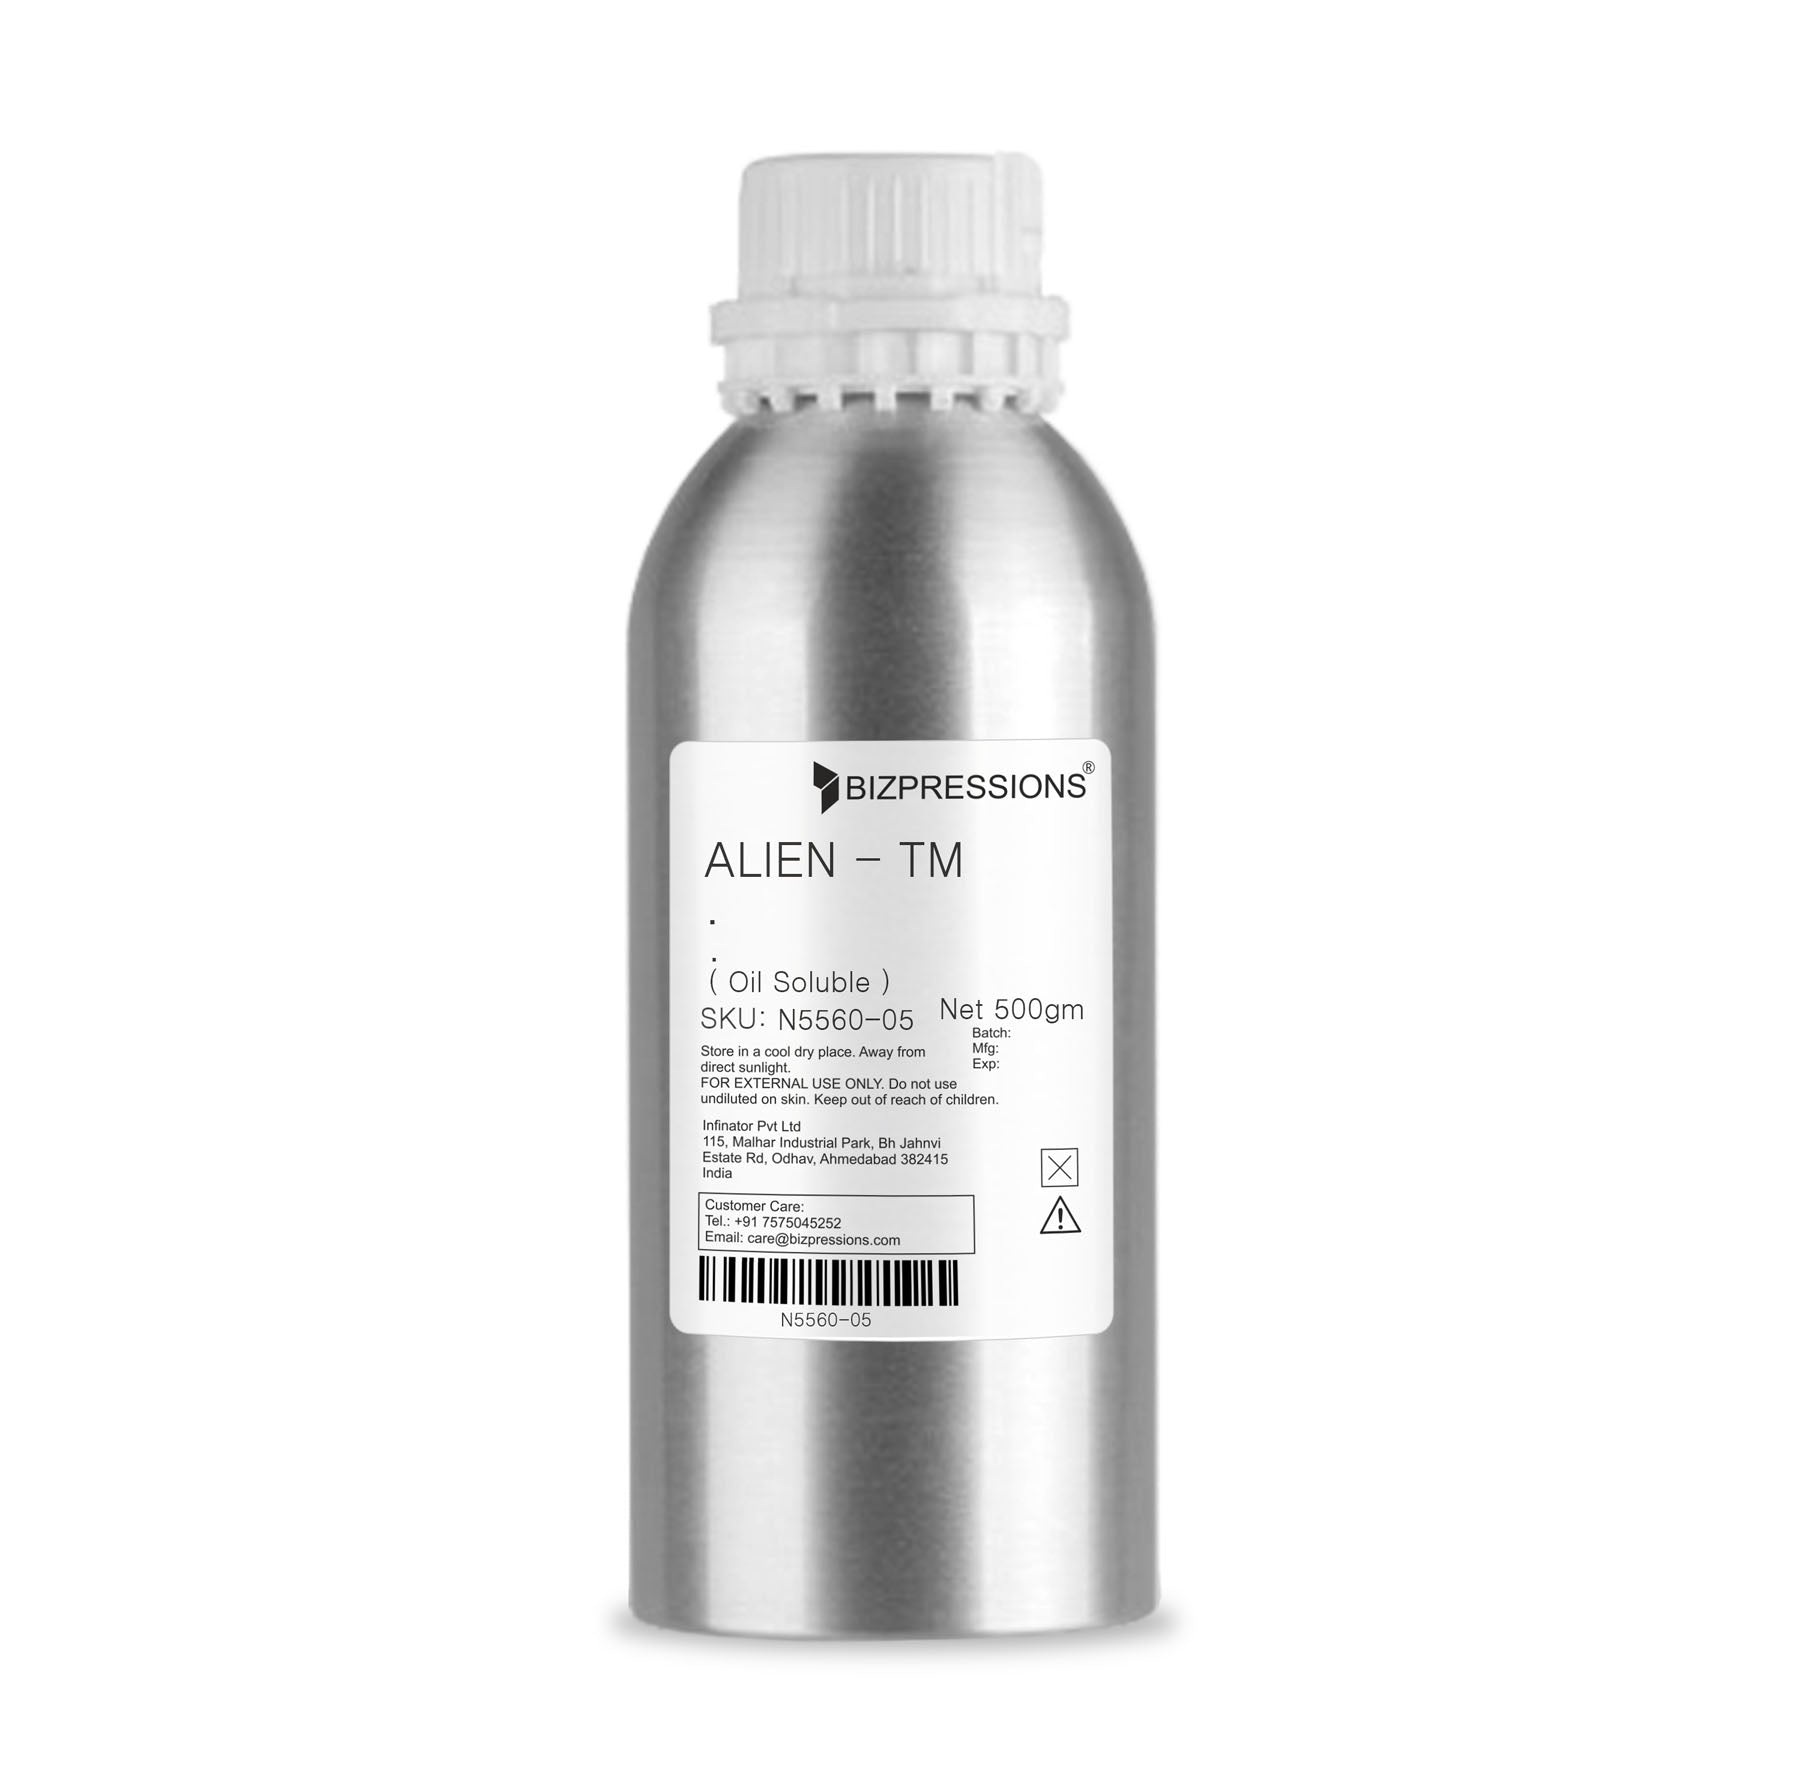 ALIEN - TM - Fragrance ( Oil Soluble ) - 500 gm